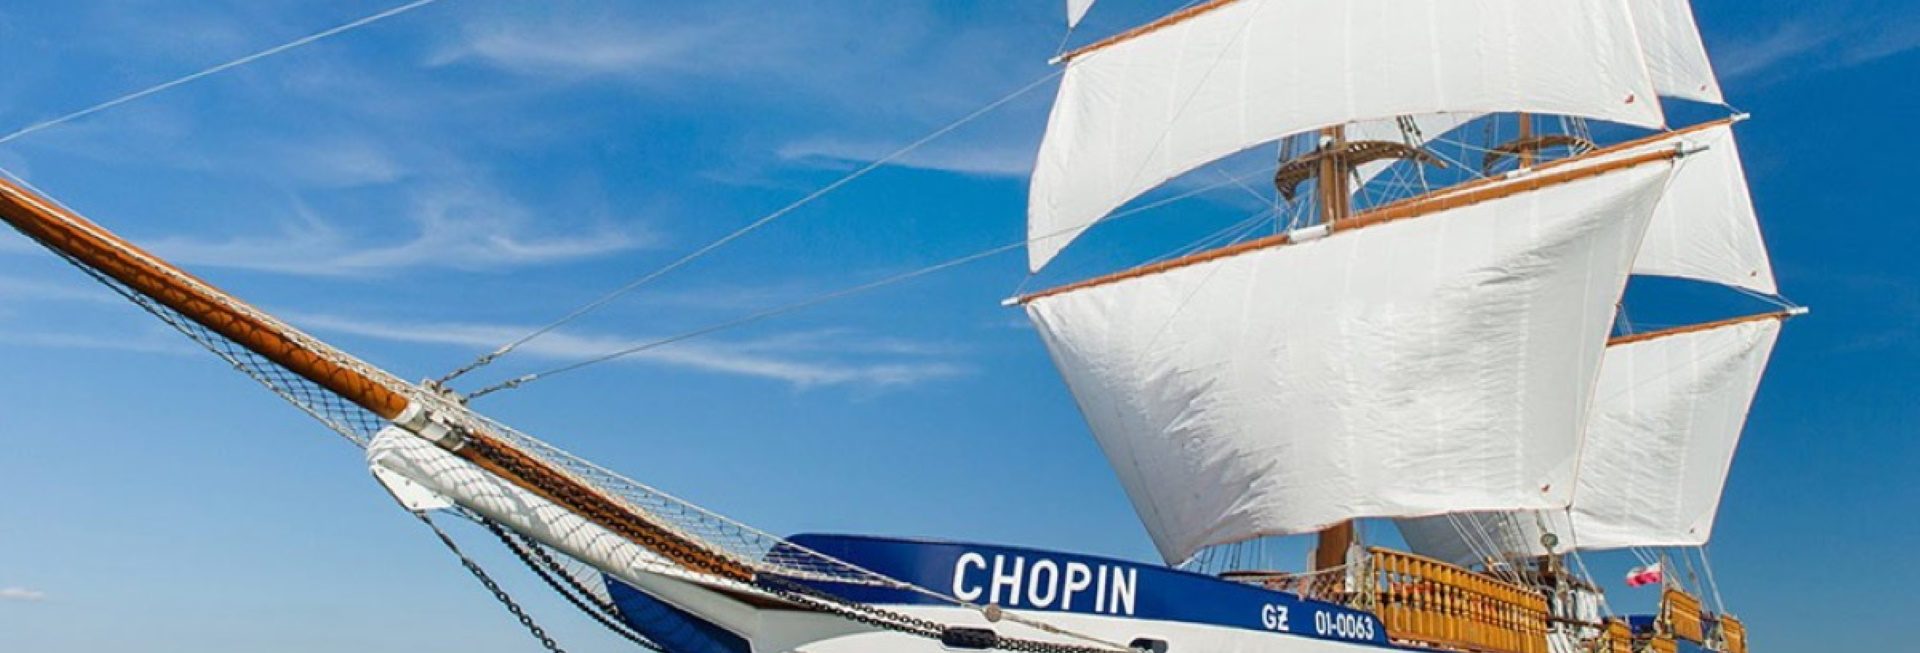 Zdjęcie statku Chopin podczas rejsu na Wielkich Jeziorach Mazurskich. 